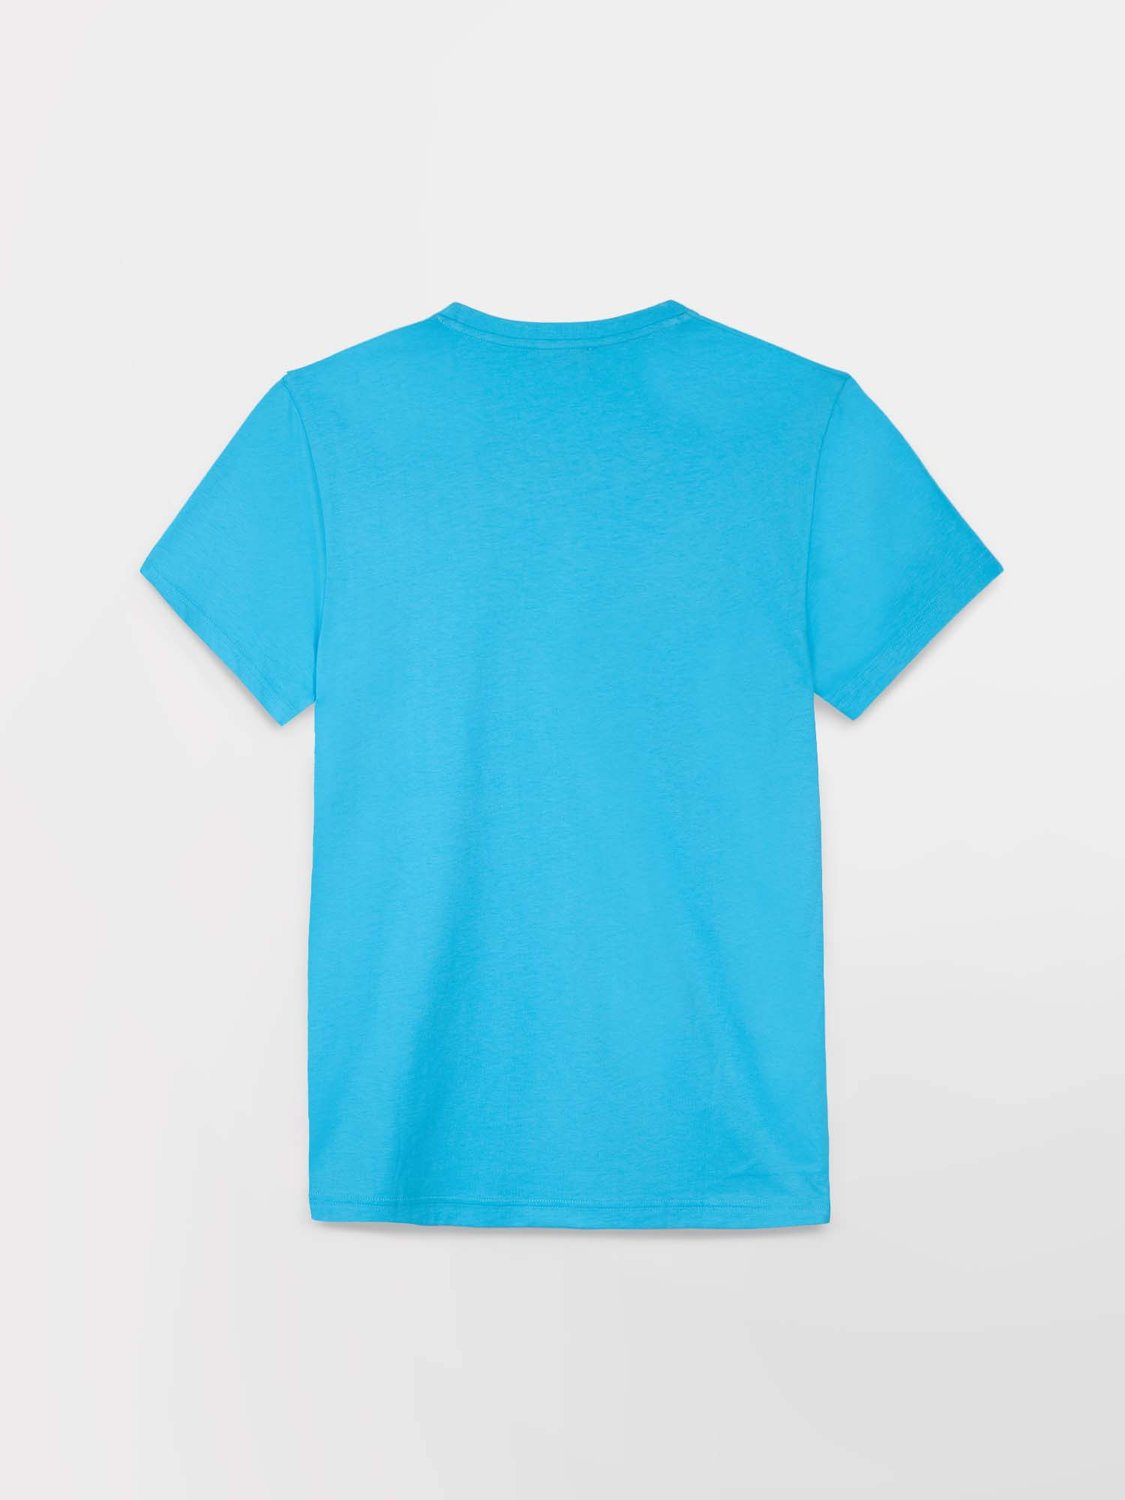 Tee Shirt Homme Manches Courtes Coton Biologique Turquoise